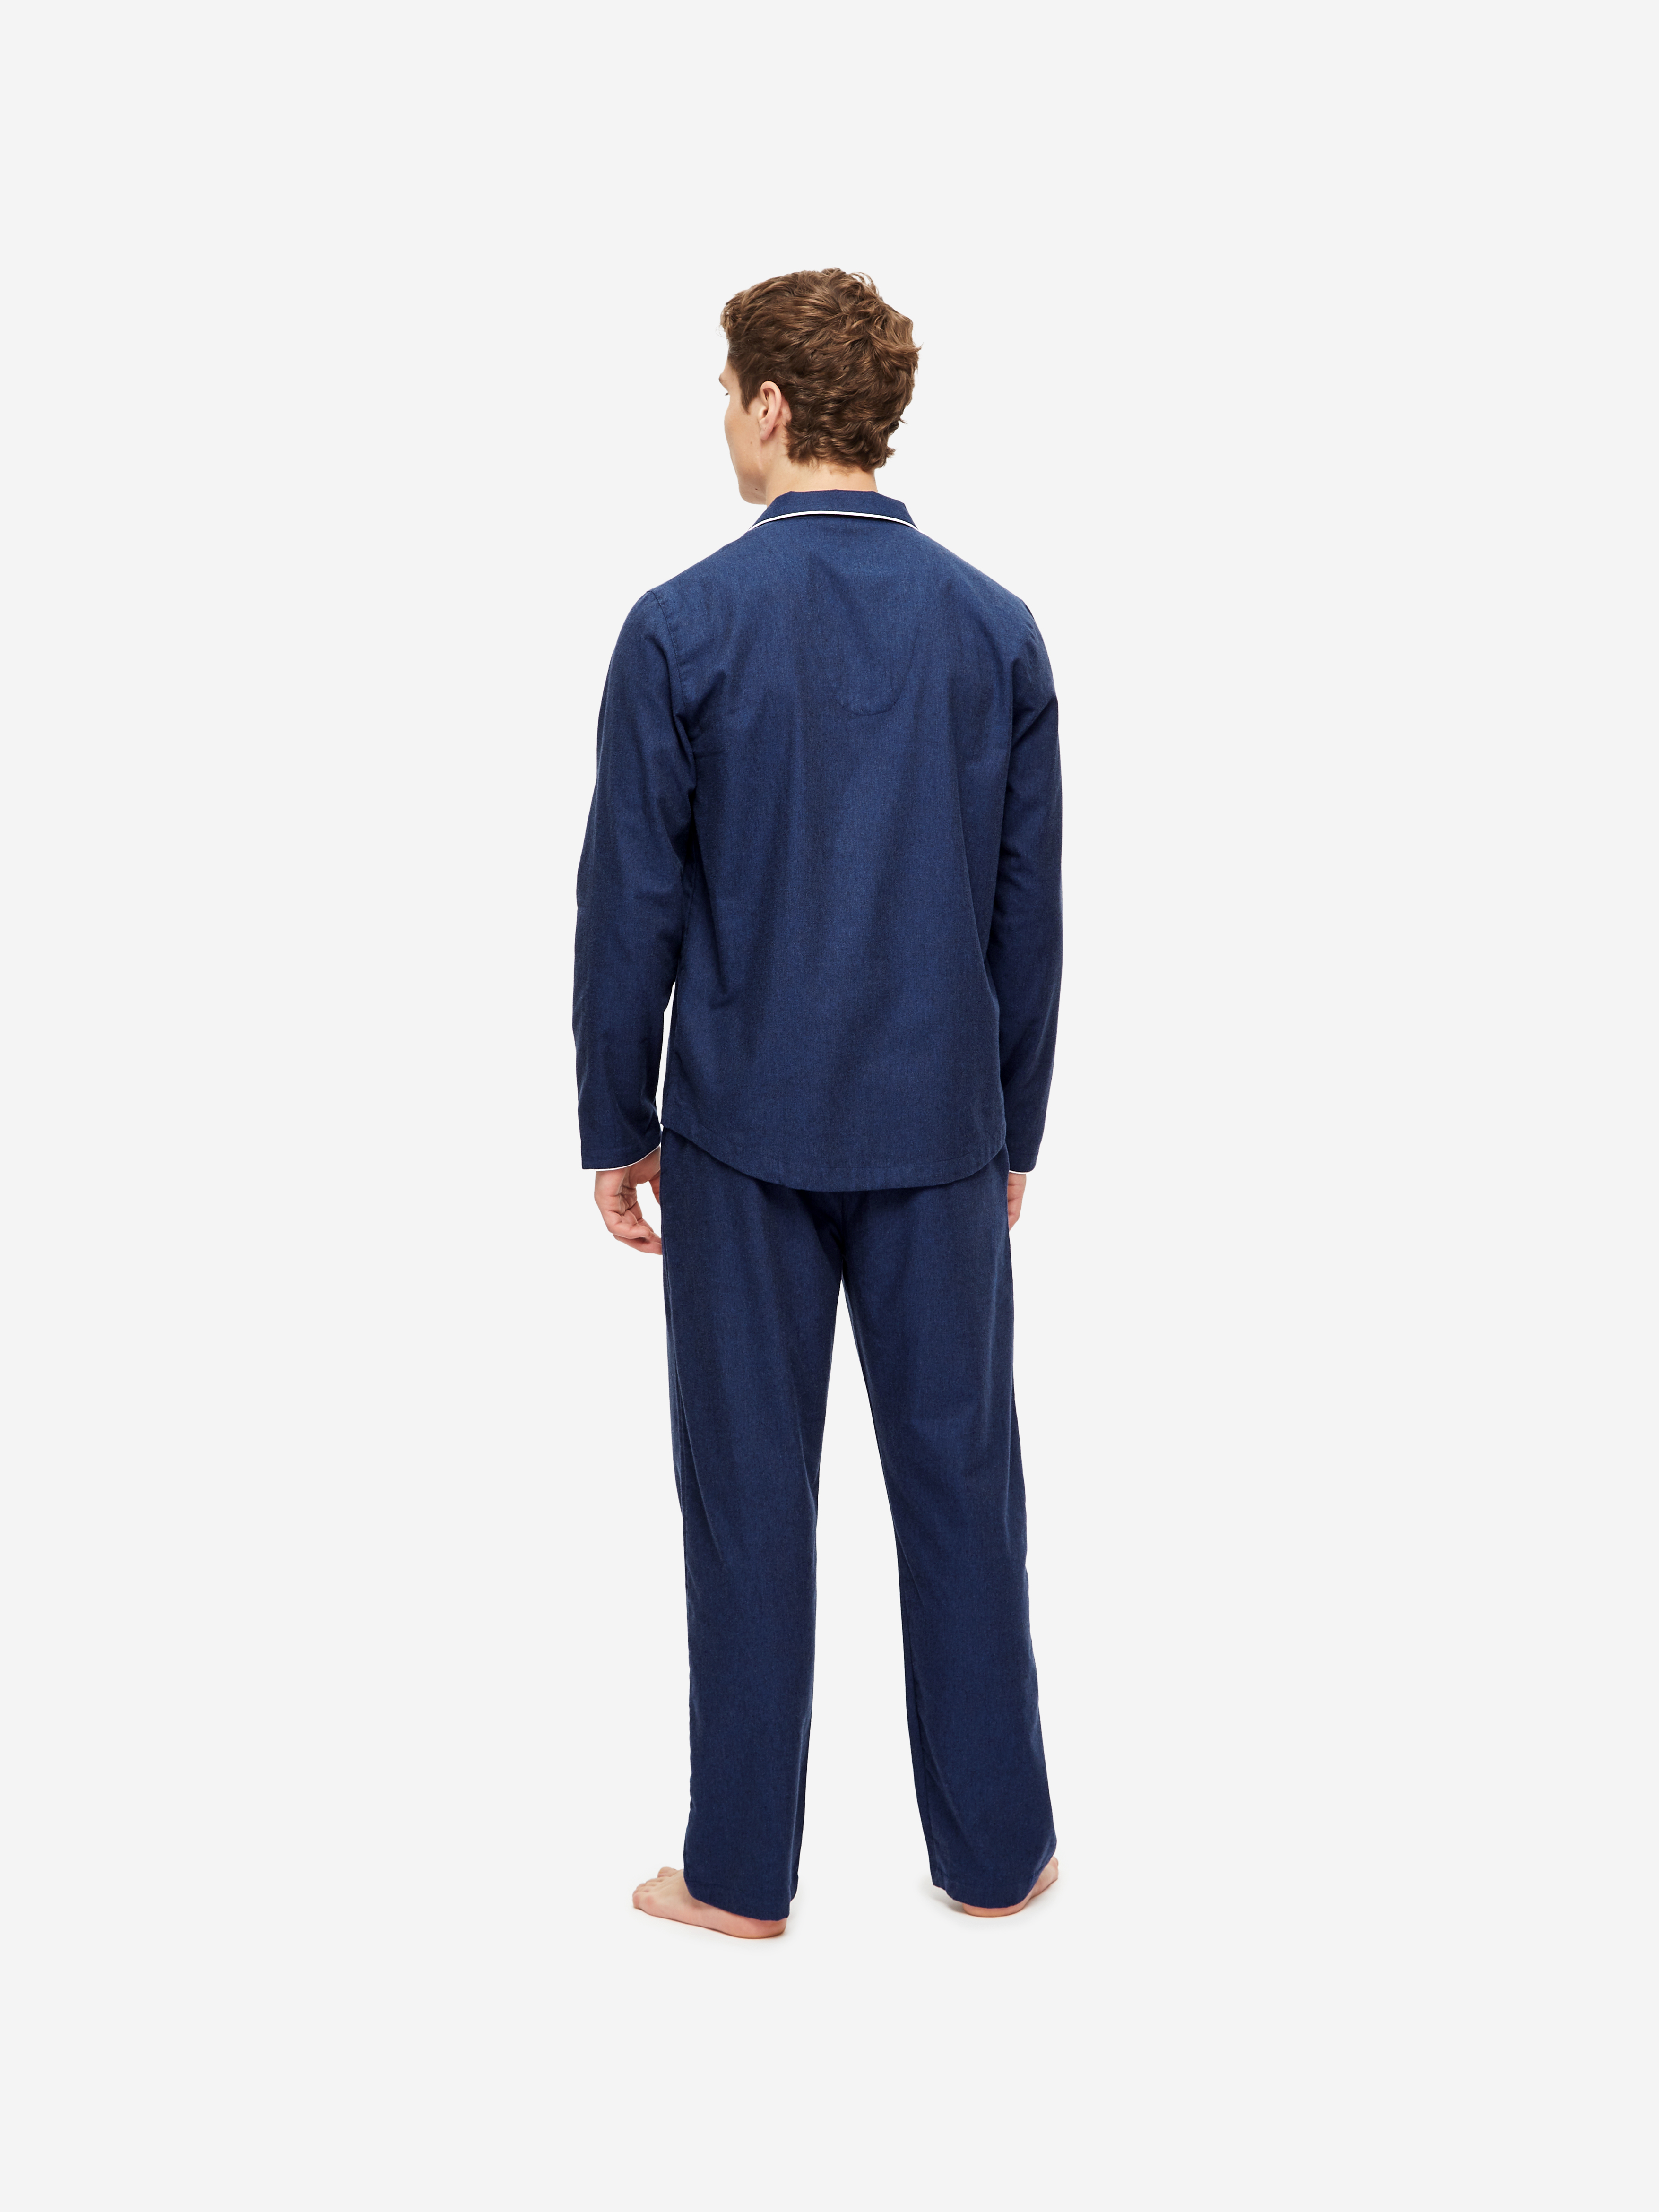 https://www.datocms-assets.com/21485/1628611683-mens-modern-fit-pyjamas-balmoral-3-brushed-cotton-navy-back.jpg